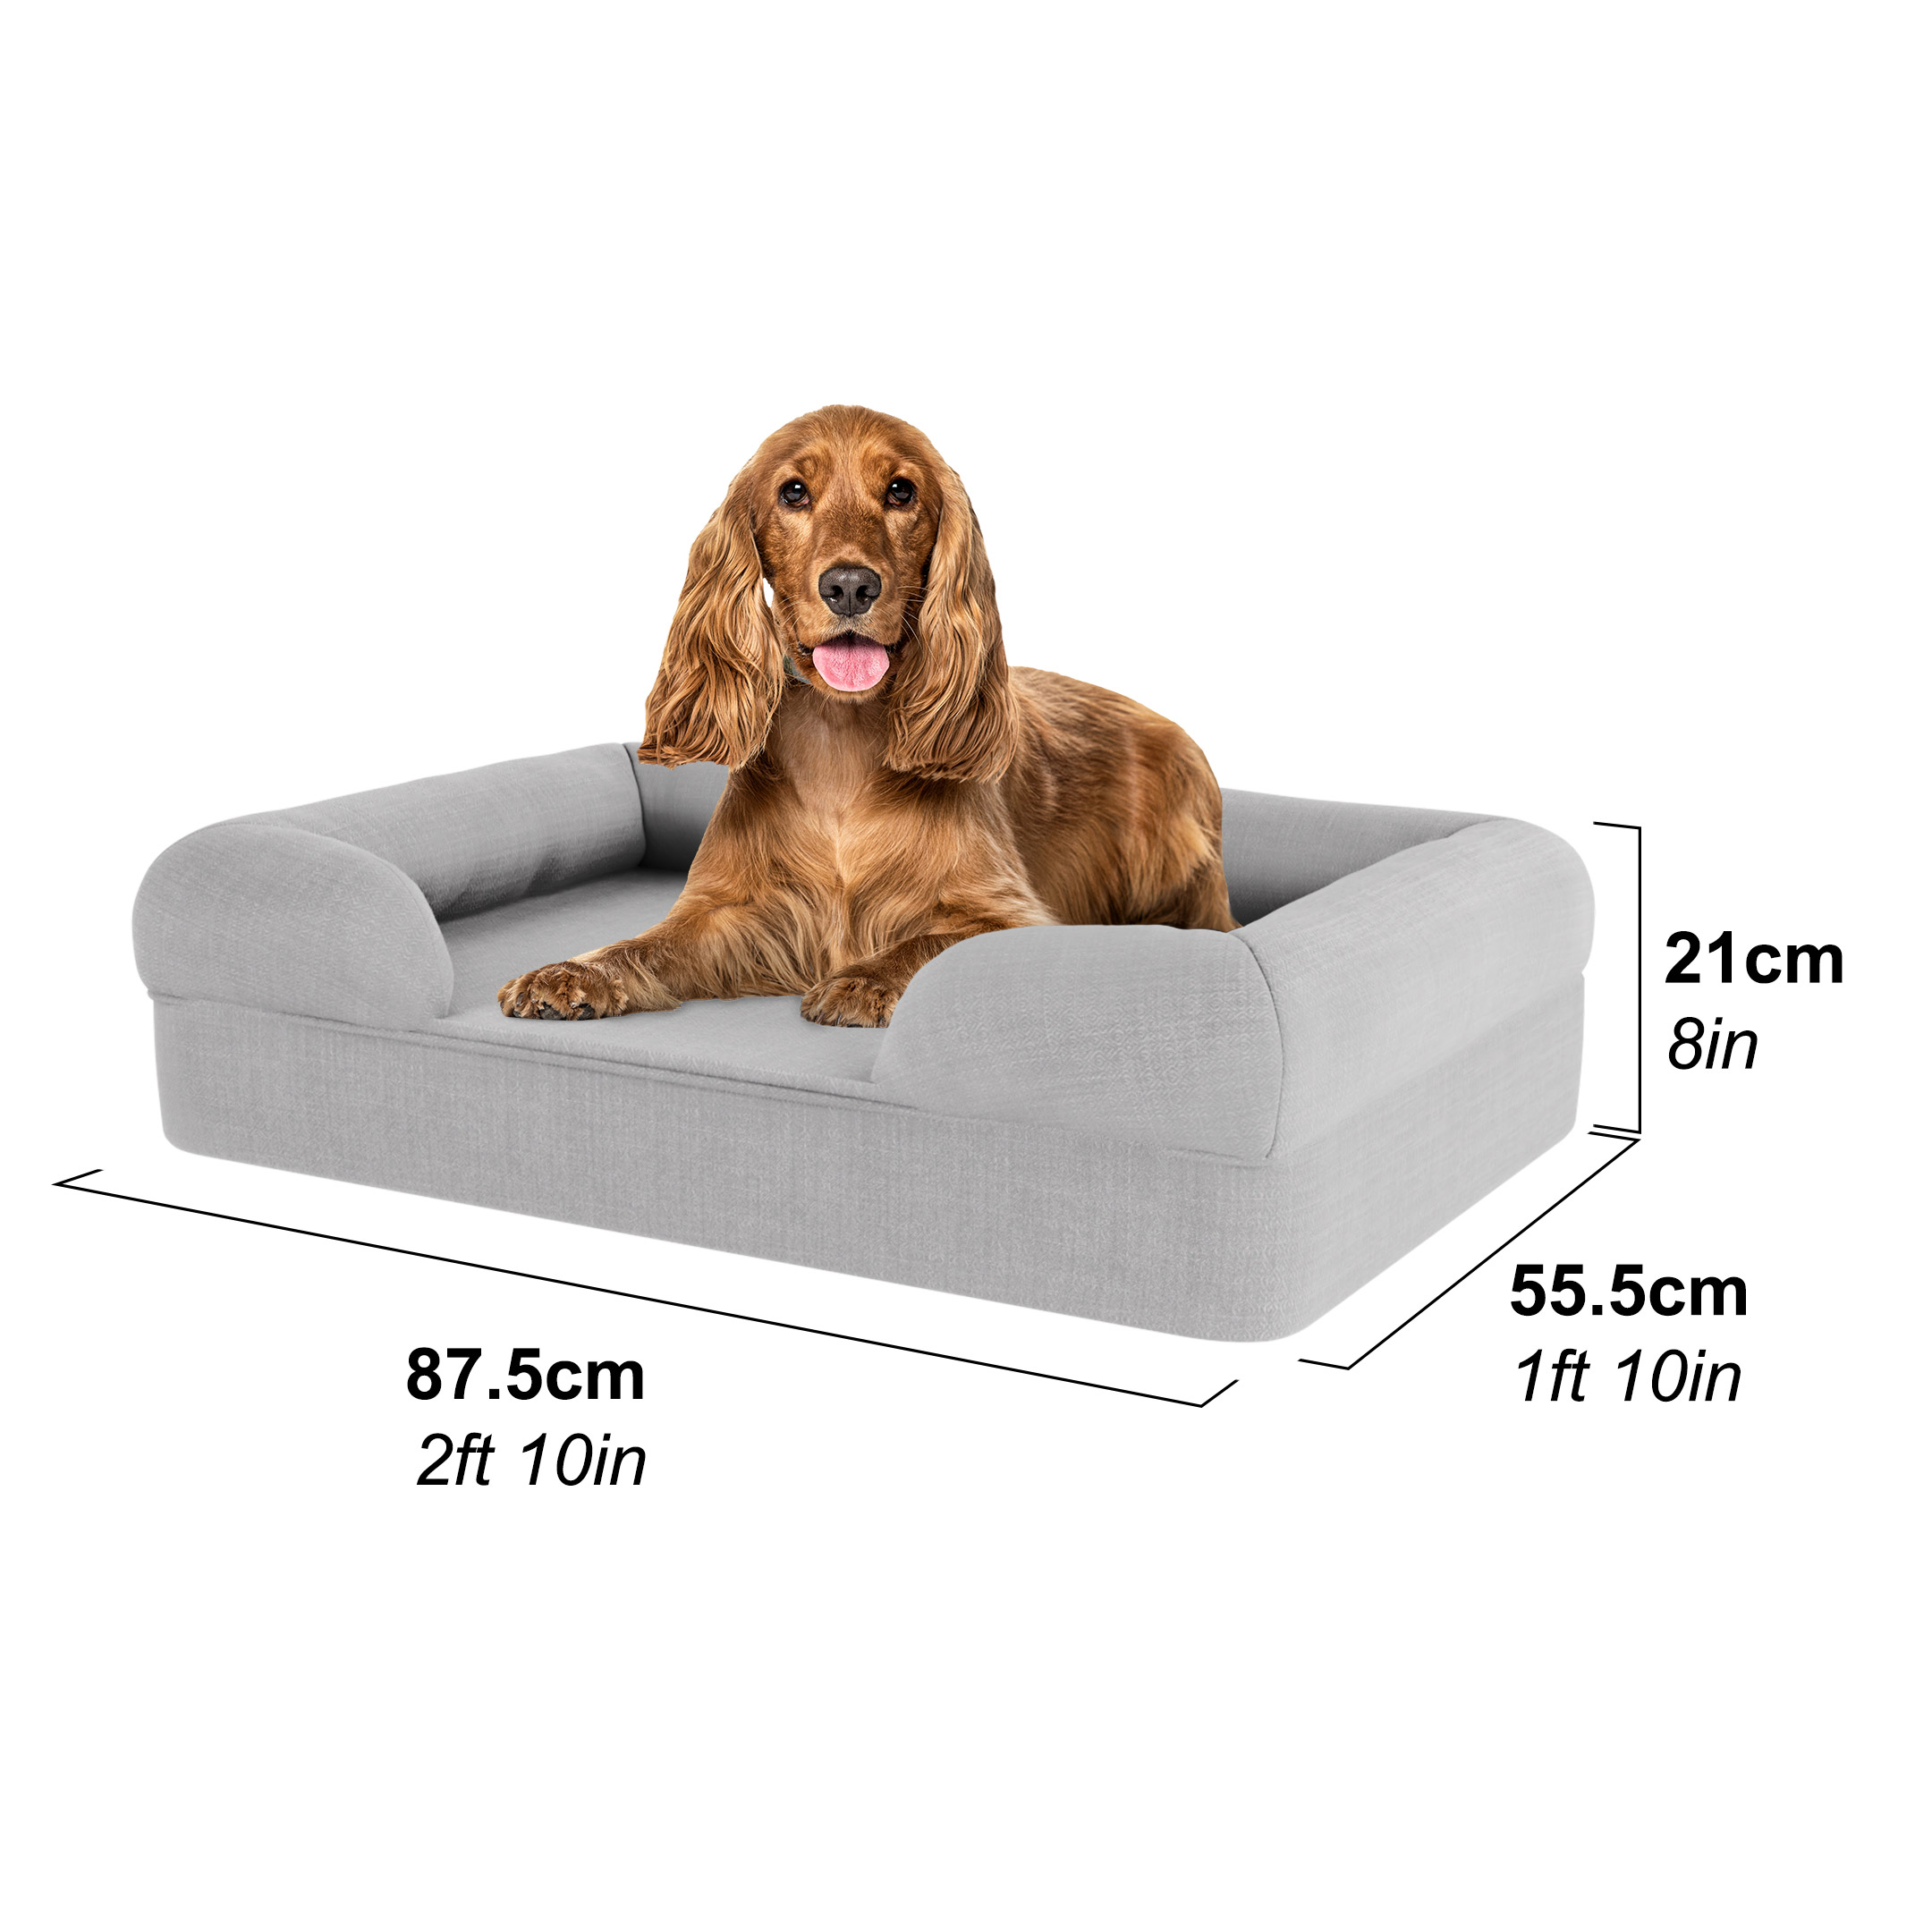 Cocker en una cama para perros mediana